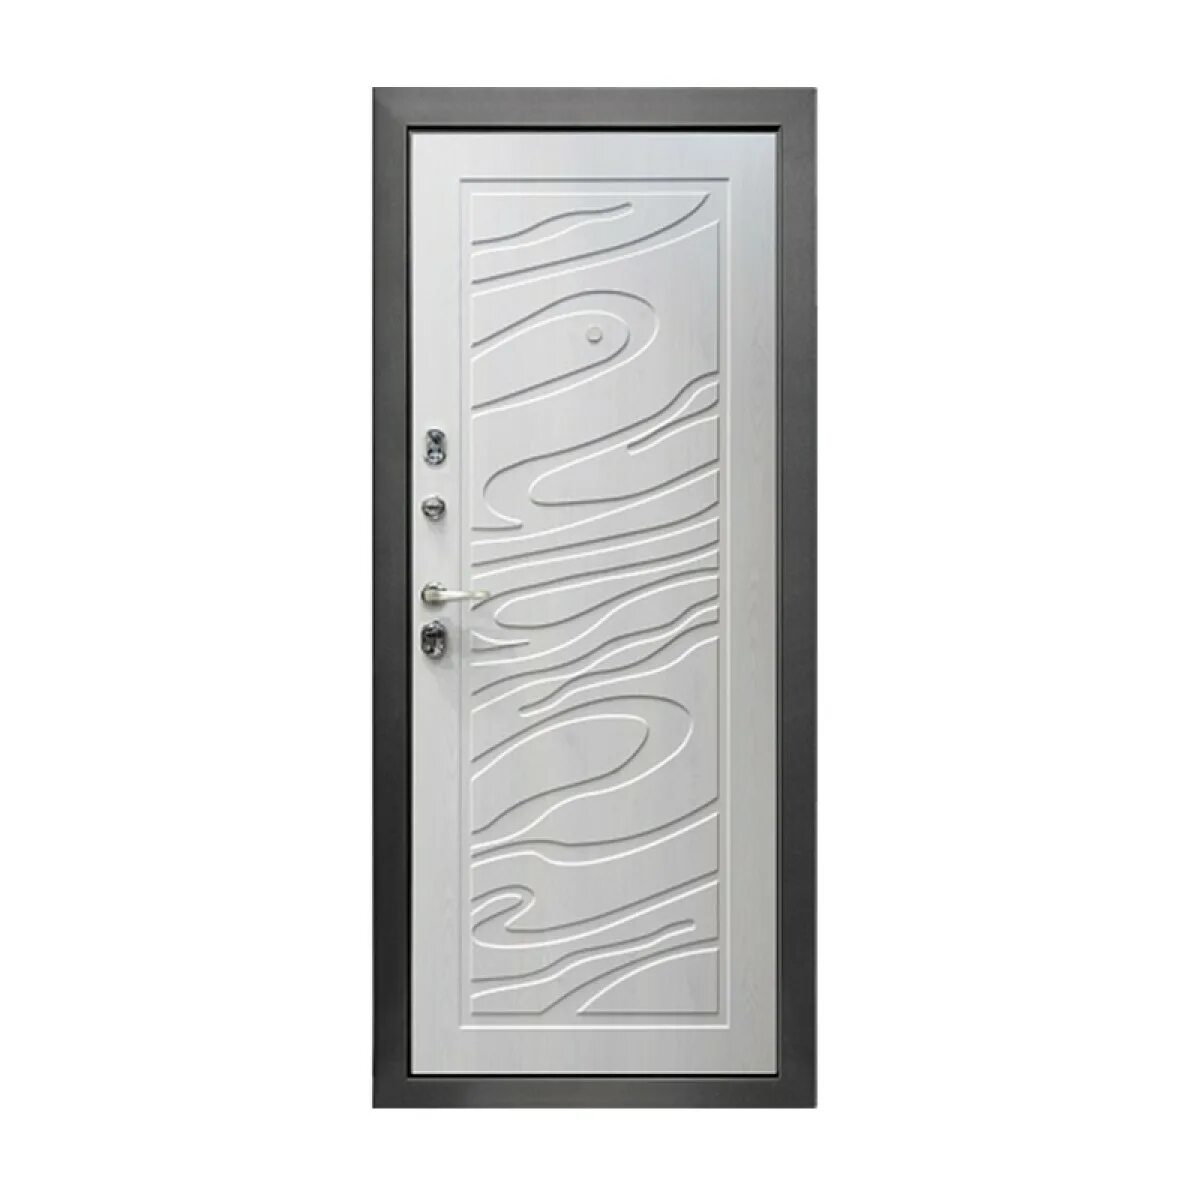 Двери джаз. Металлическая дверь Промет джаз. Дверь джаз Промет венге. Дверь джаз 100-2050/880/r мокко. Дверь входная джаз металлическая.